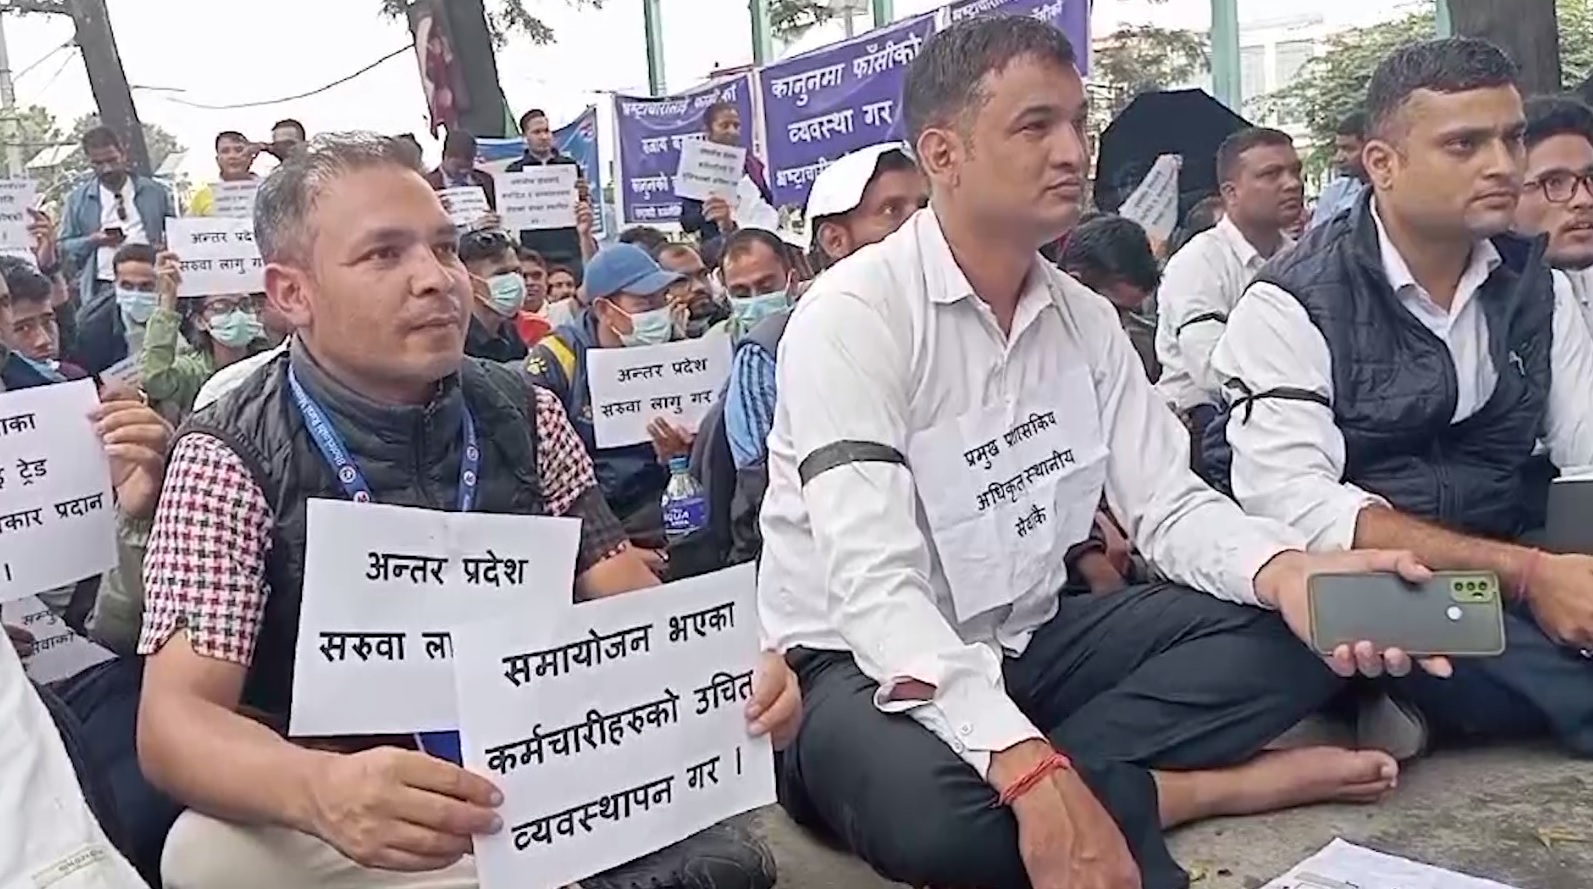 स्थानीय तहका कर्मचारीले पनि थाले आन्दोलनमा, काठमाडौं केन्द्रीत प्रदर्शन